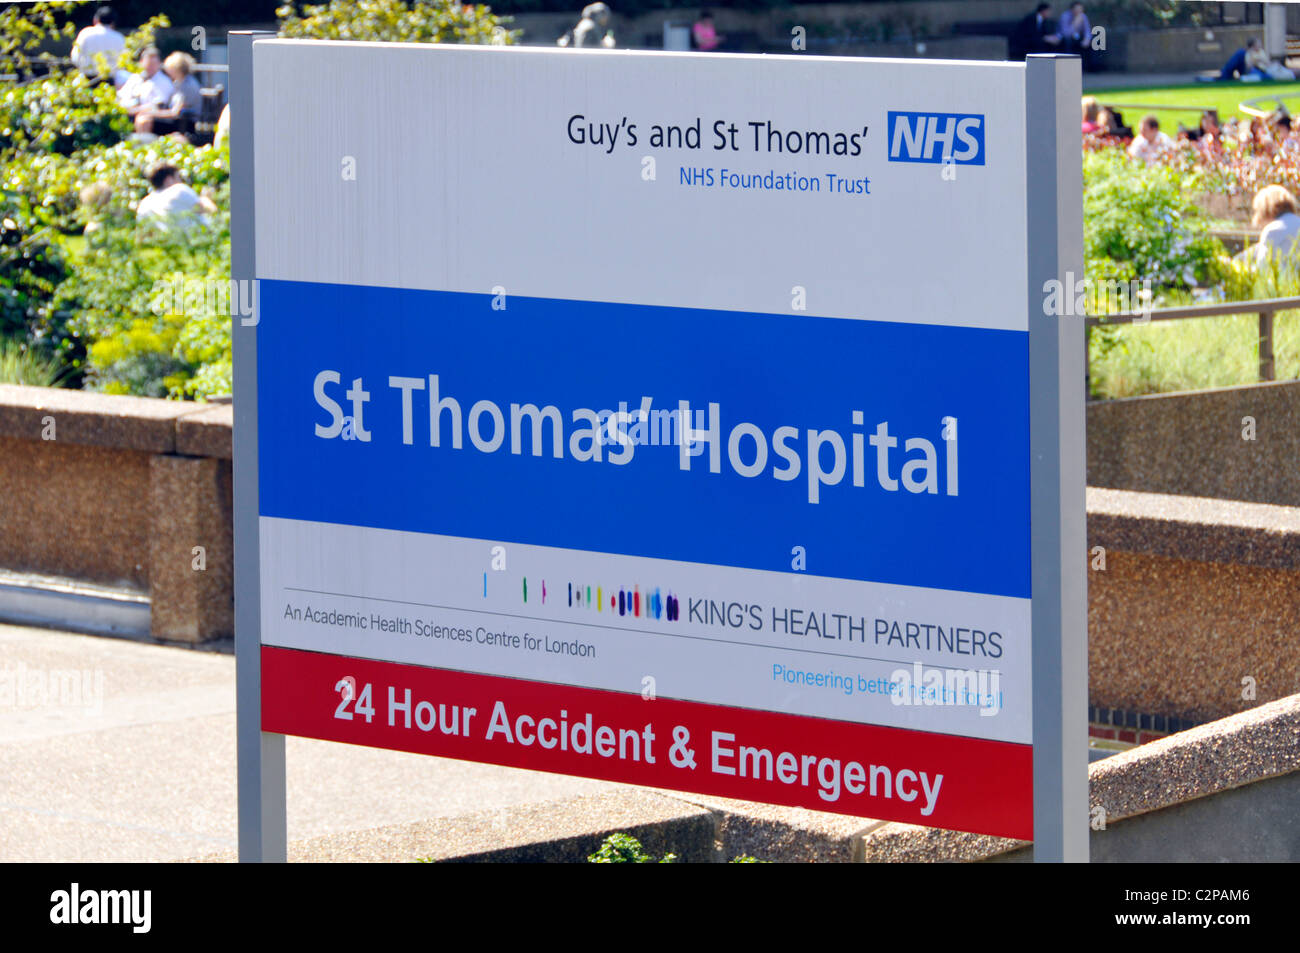 NHS sign St Thomas' Hospital mit 24 Stunden Unfall & Notaufnahme Teil der Kerle und St Thomas Grundlage Vertrauen in Lambeth London England Großbritannien Stockfoto